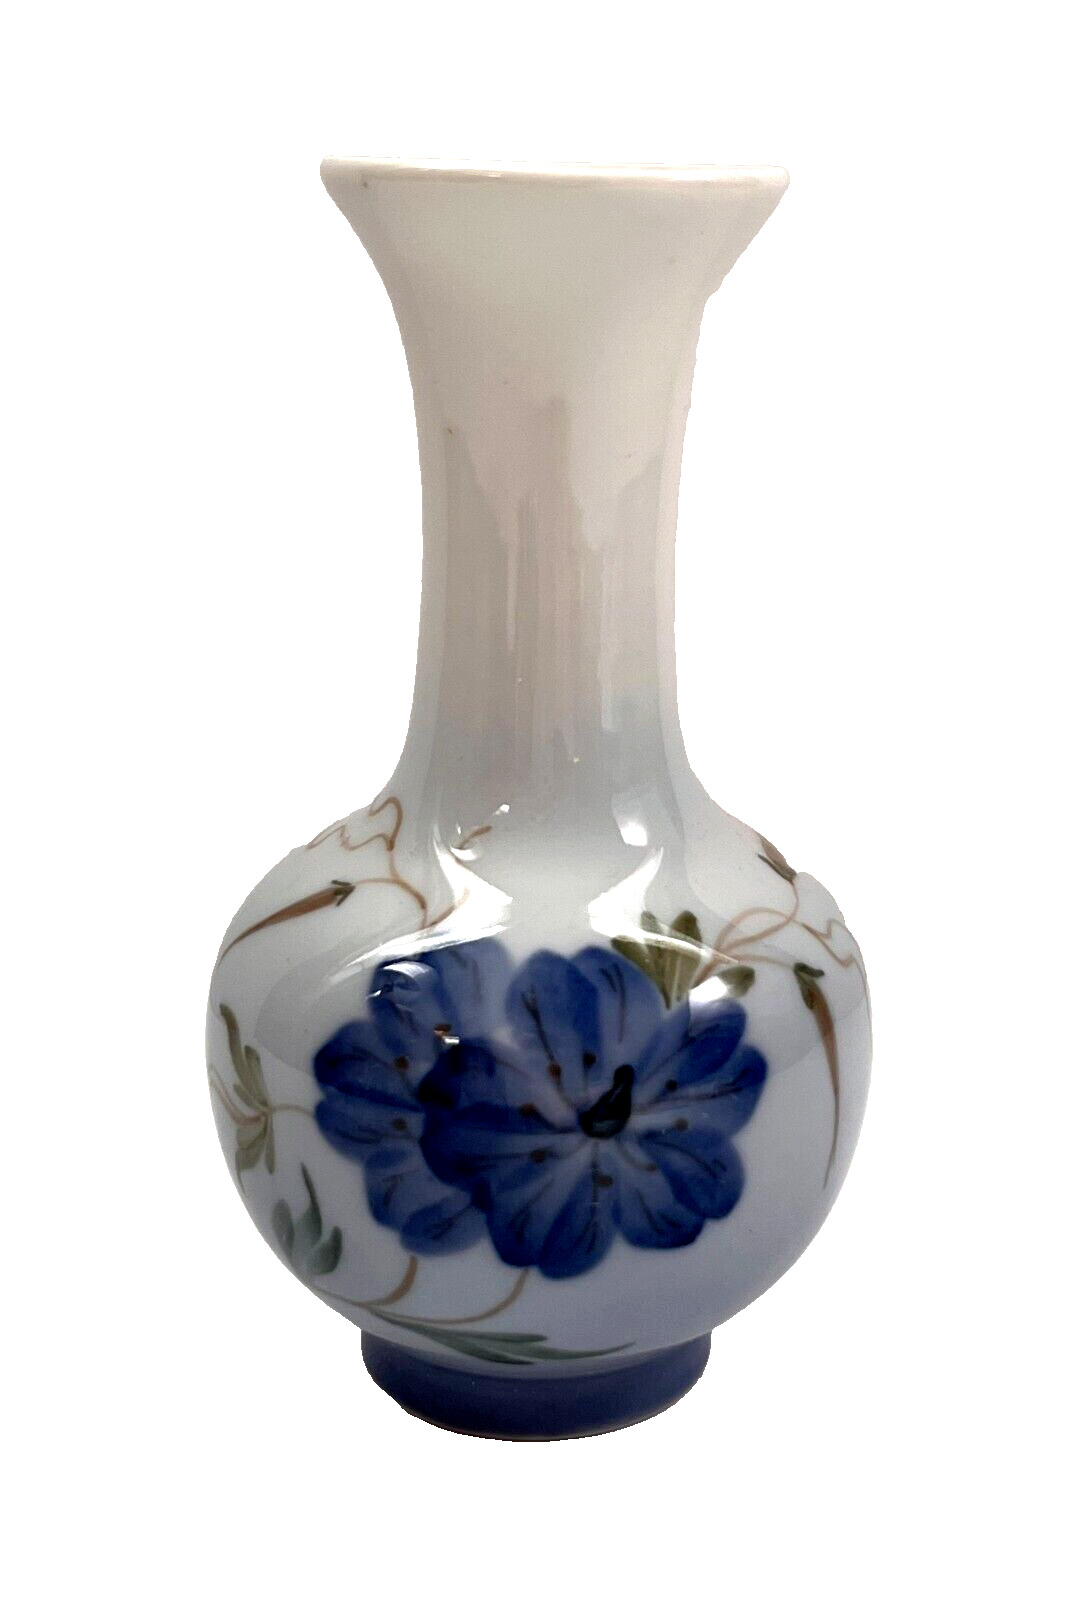 Vintage Royal Copenhagen Denmark 2800-1554 Small Bud Vase w/ Blue Flowers